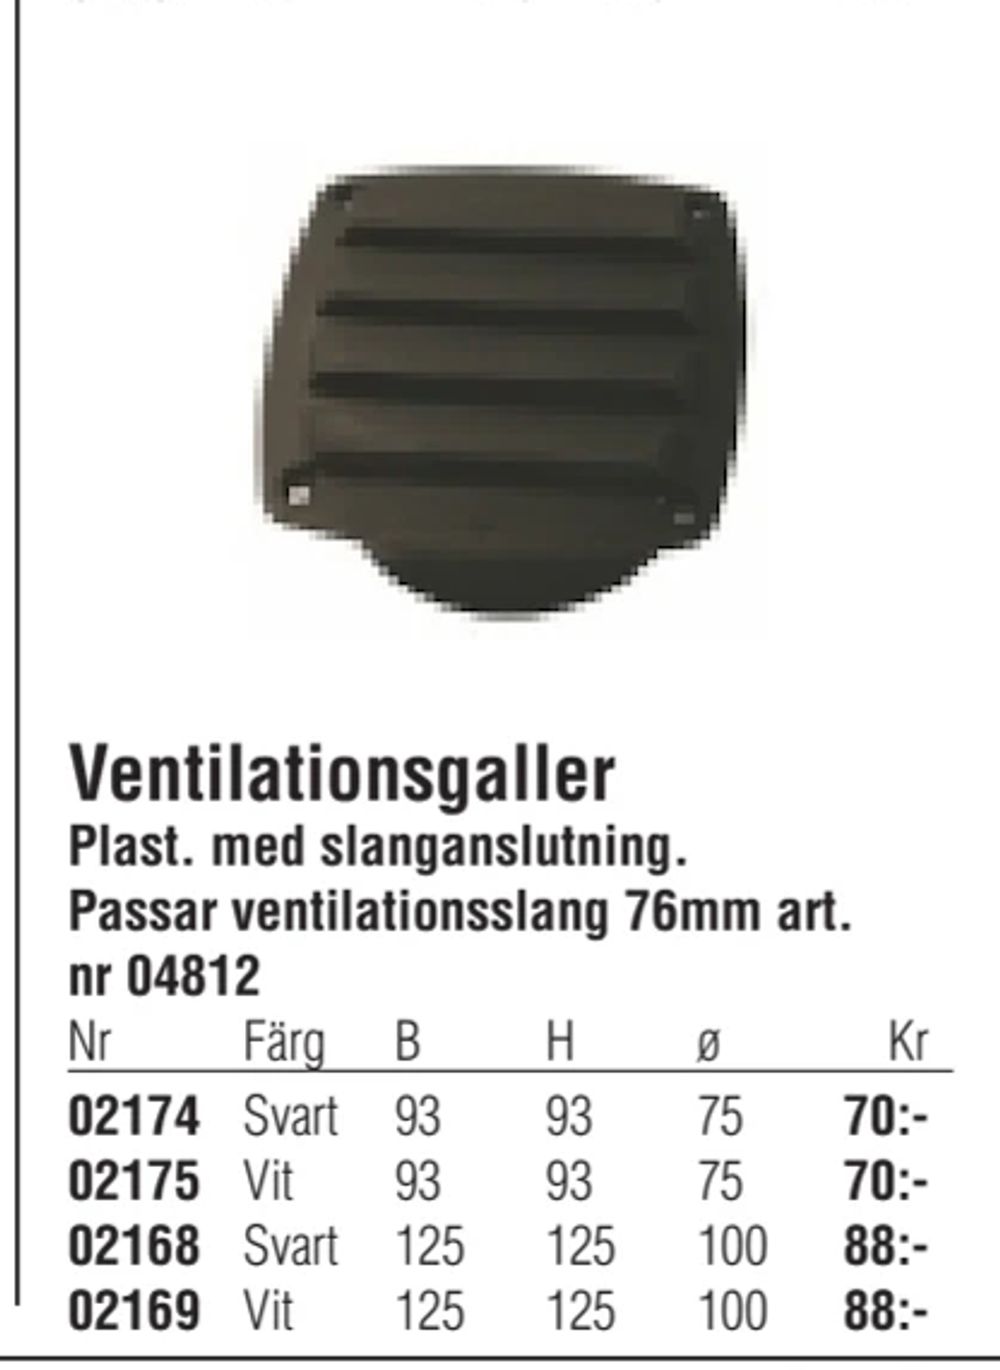 Erbjudanden på Plast. med slanganslutning. Passar ventilationsslang 76mm art. nr 04812 från Erlandsons Brygga för 70 kr